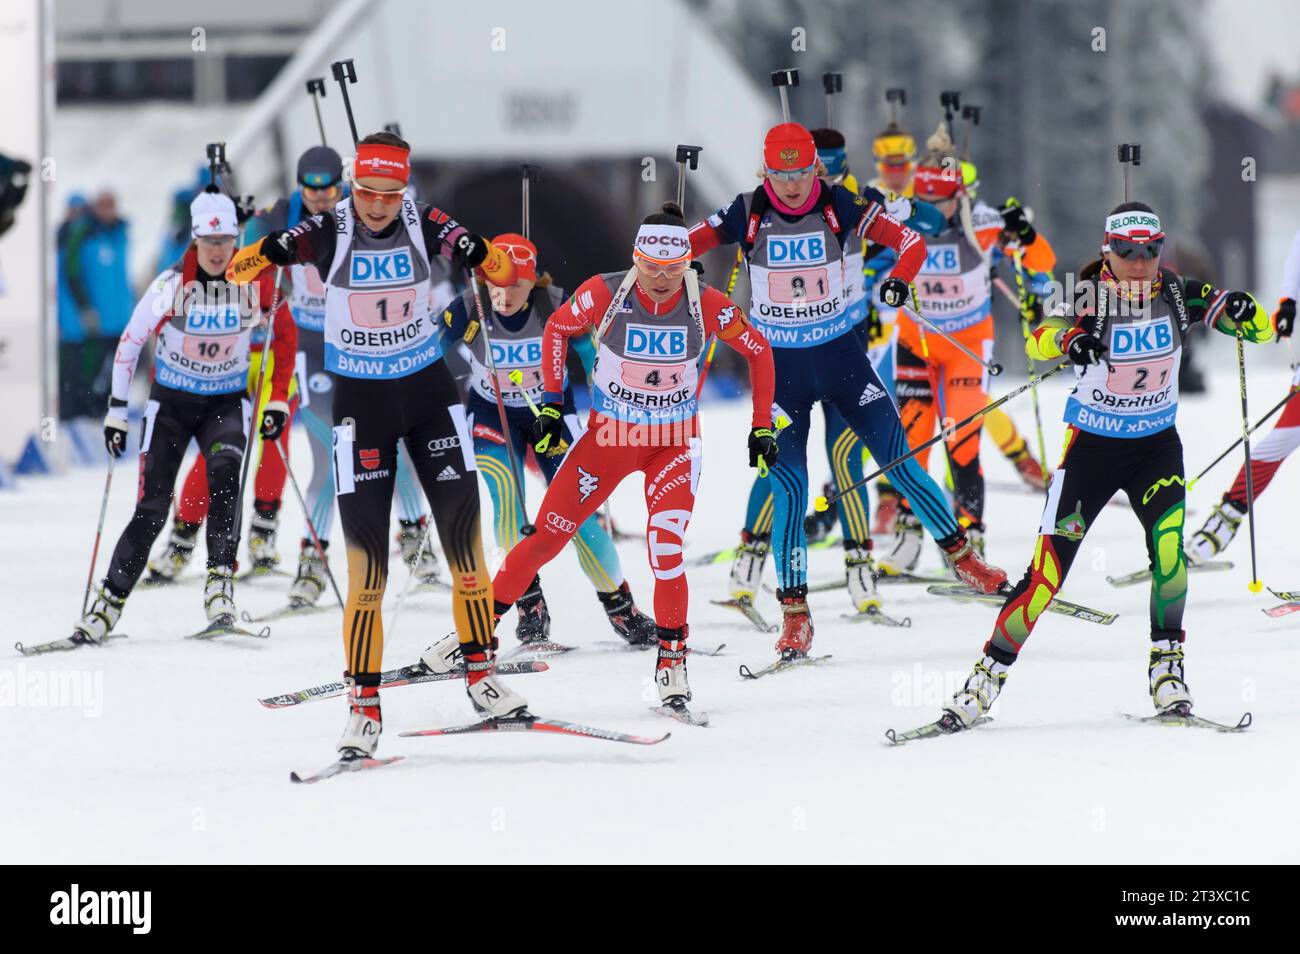 Luise Kummer (1.1) Aktion Biathlon Welt Cup 4 x 6 KM Staffel der Frauen in Oberhof, Deutschland am 07.01.2015 Stock Photo